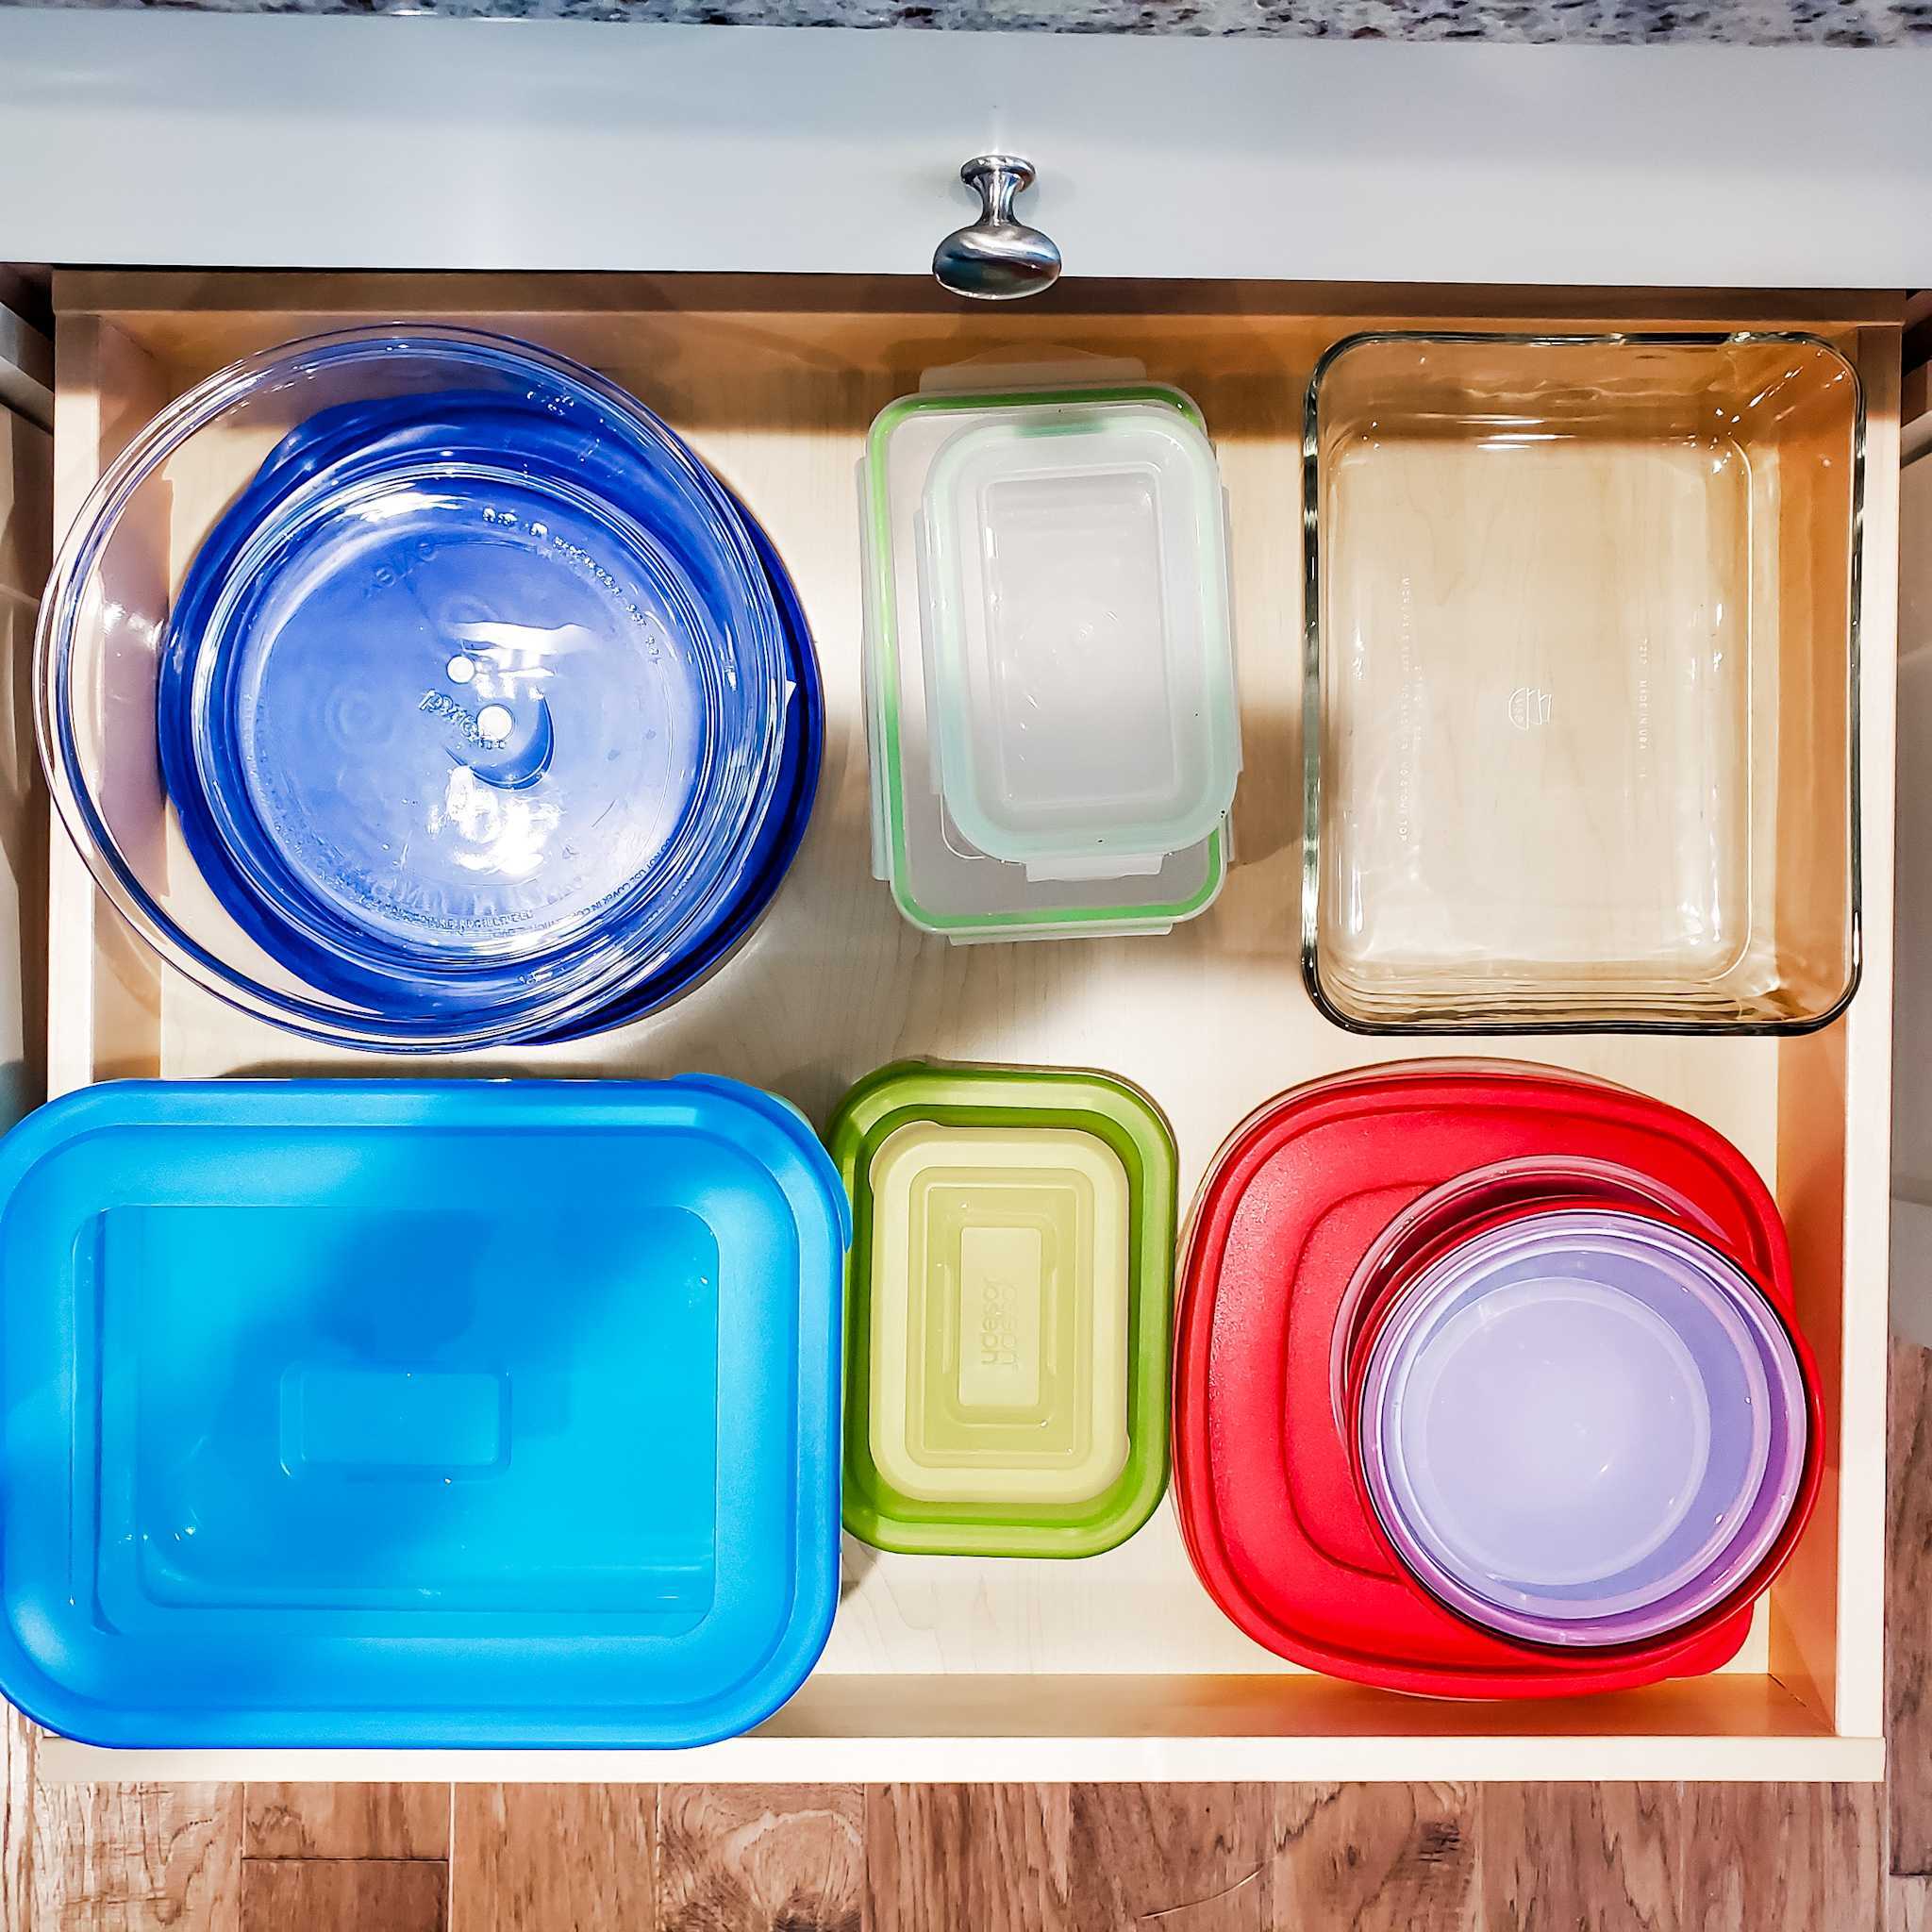 Tupperware organized in kitchen drawer. 